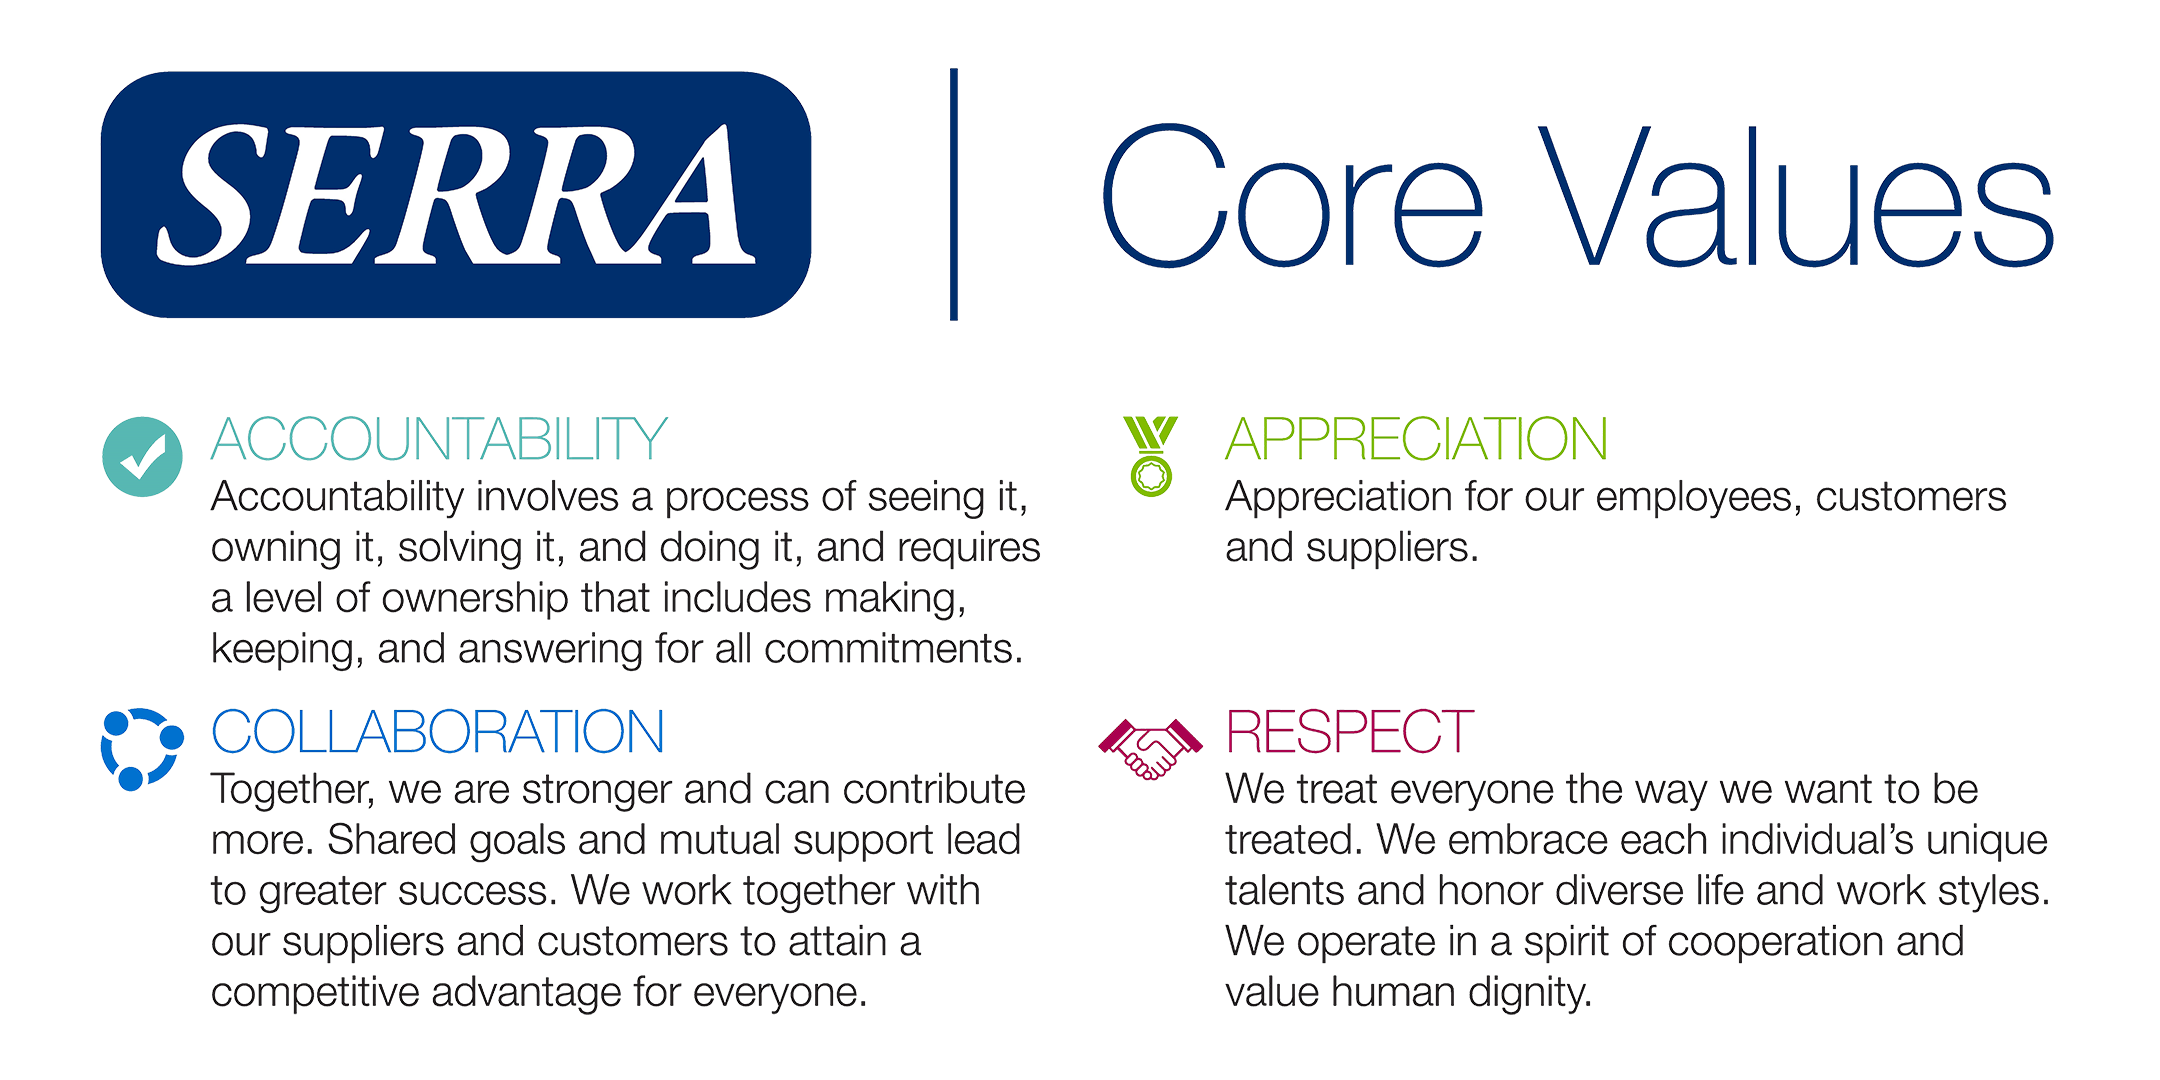 Serra Core Values